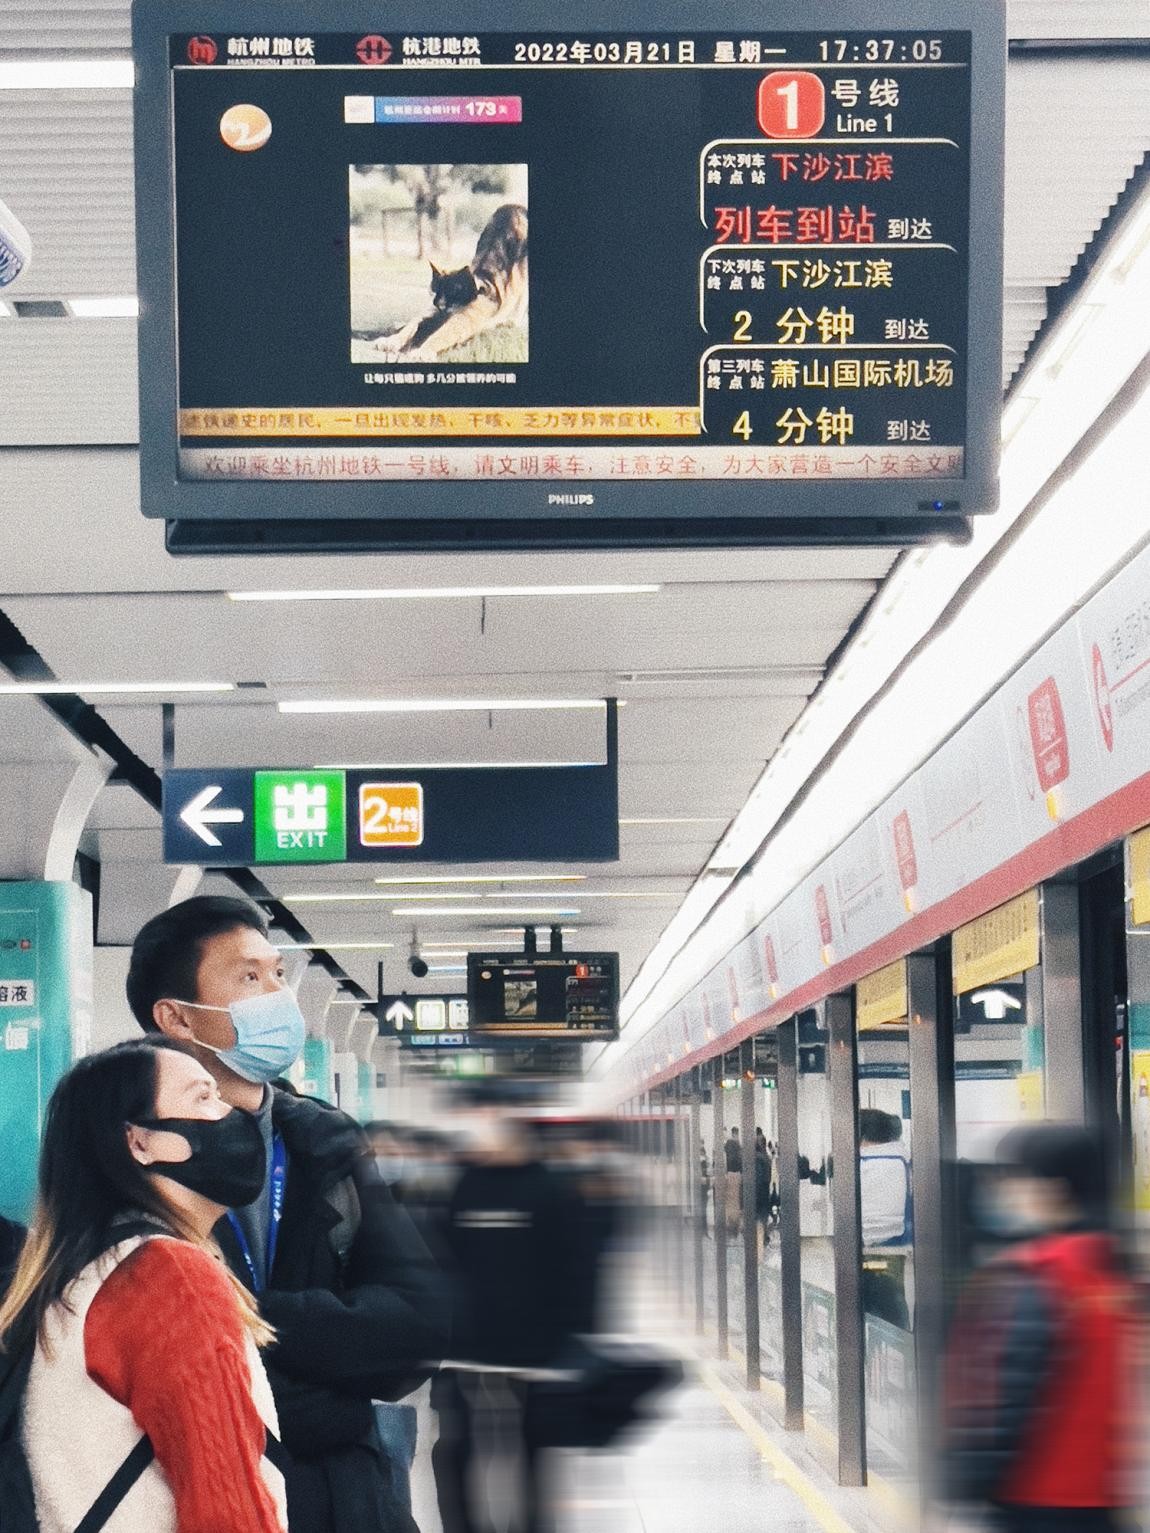 “爱宠青年公益影像计划“上线杭州地铁屏 高校流浪动物生存引发思考